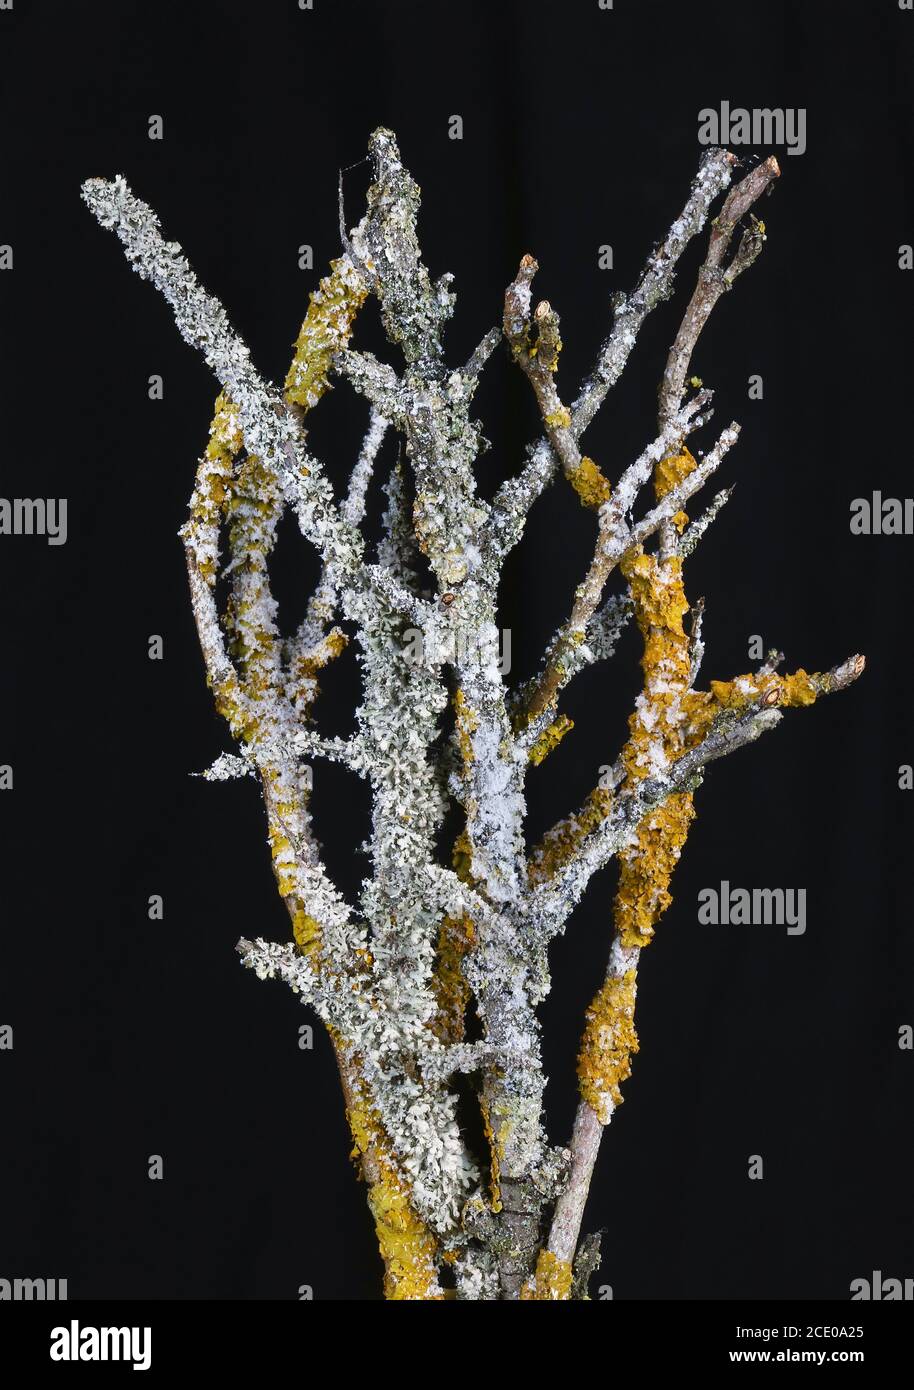 Las colonias de liquen amarillo y gris crecen en las ramas del bosque aislado en negro Foto de stock